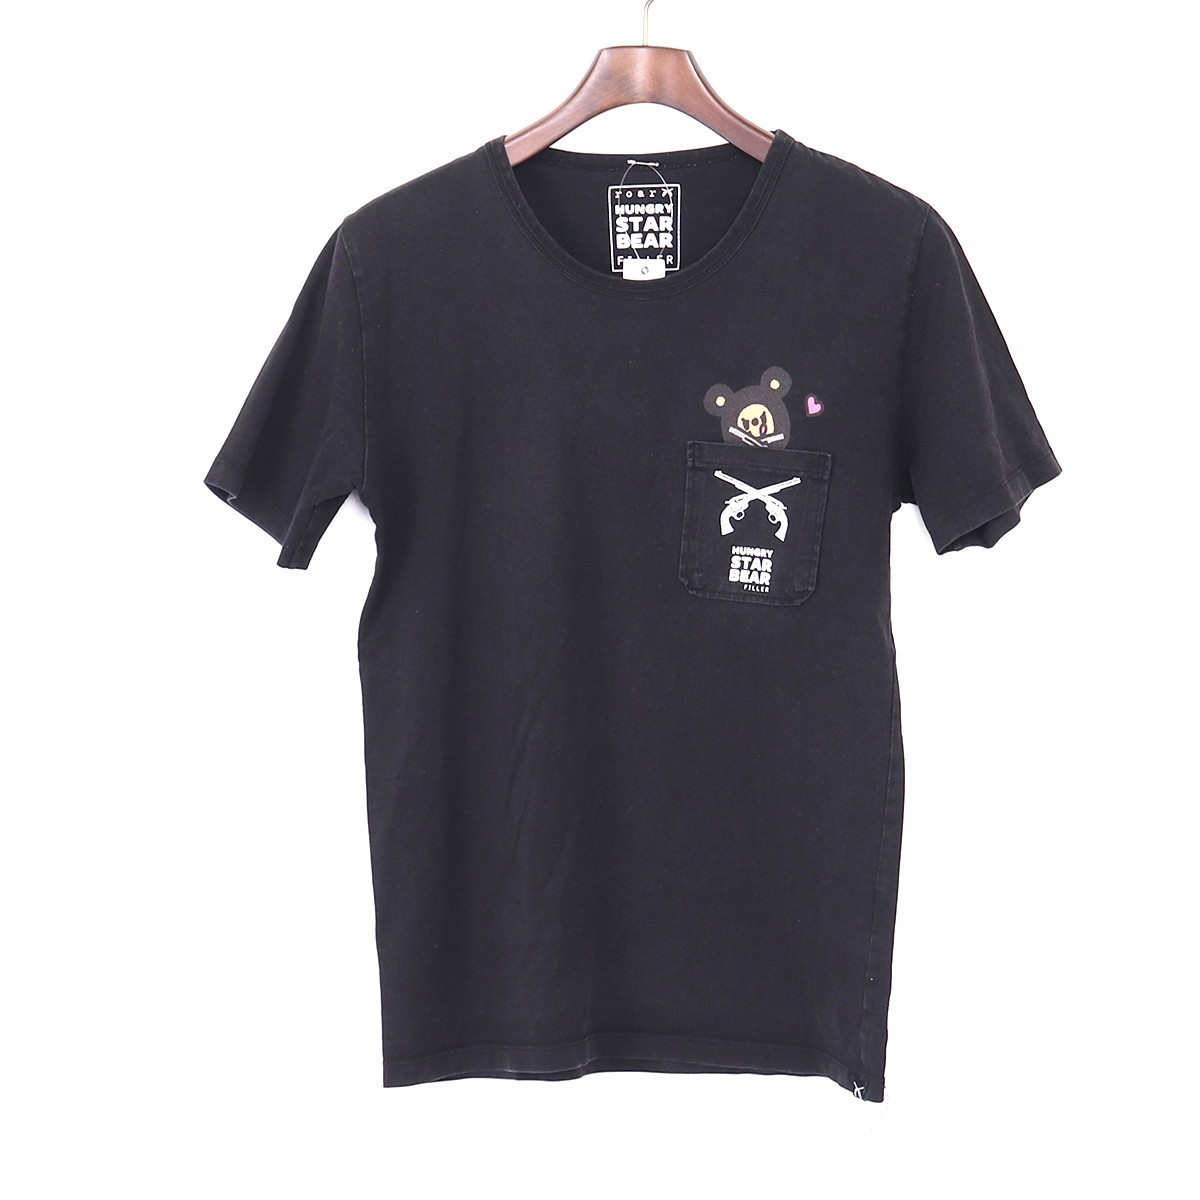 ロアー ROAR HUNGRY STAR 激安卸販売新品 BEAR TEE SALE 60%OFF Tシャツ R GG989 ブラック 2